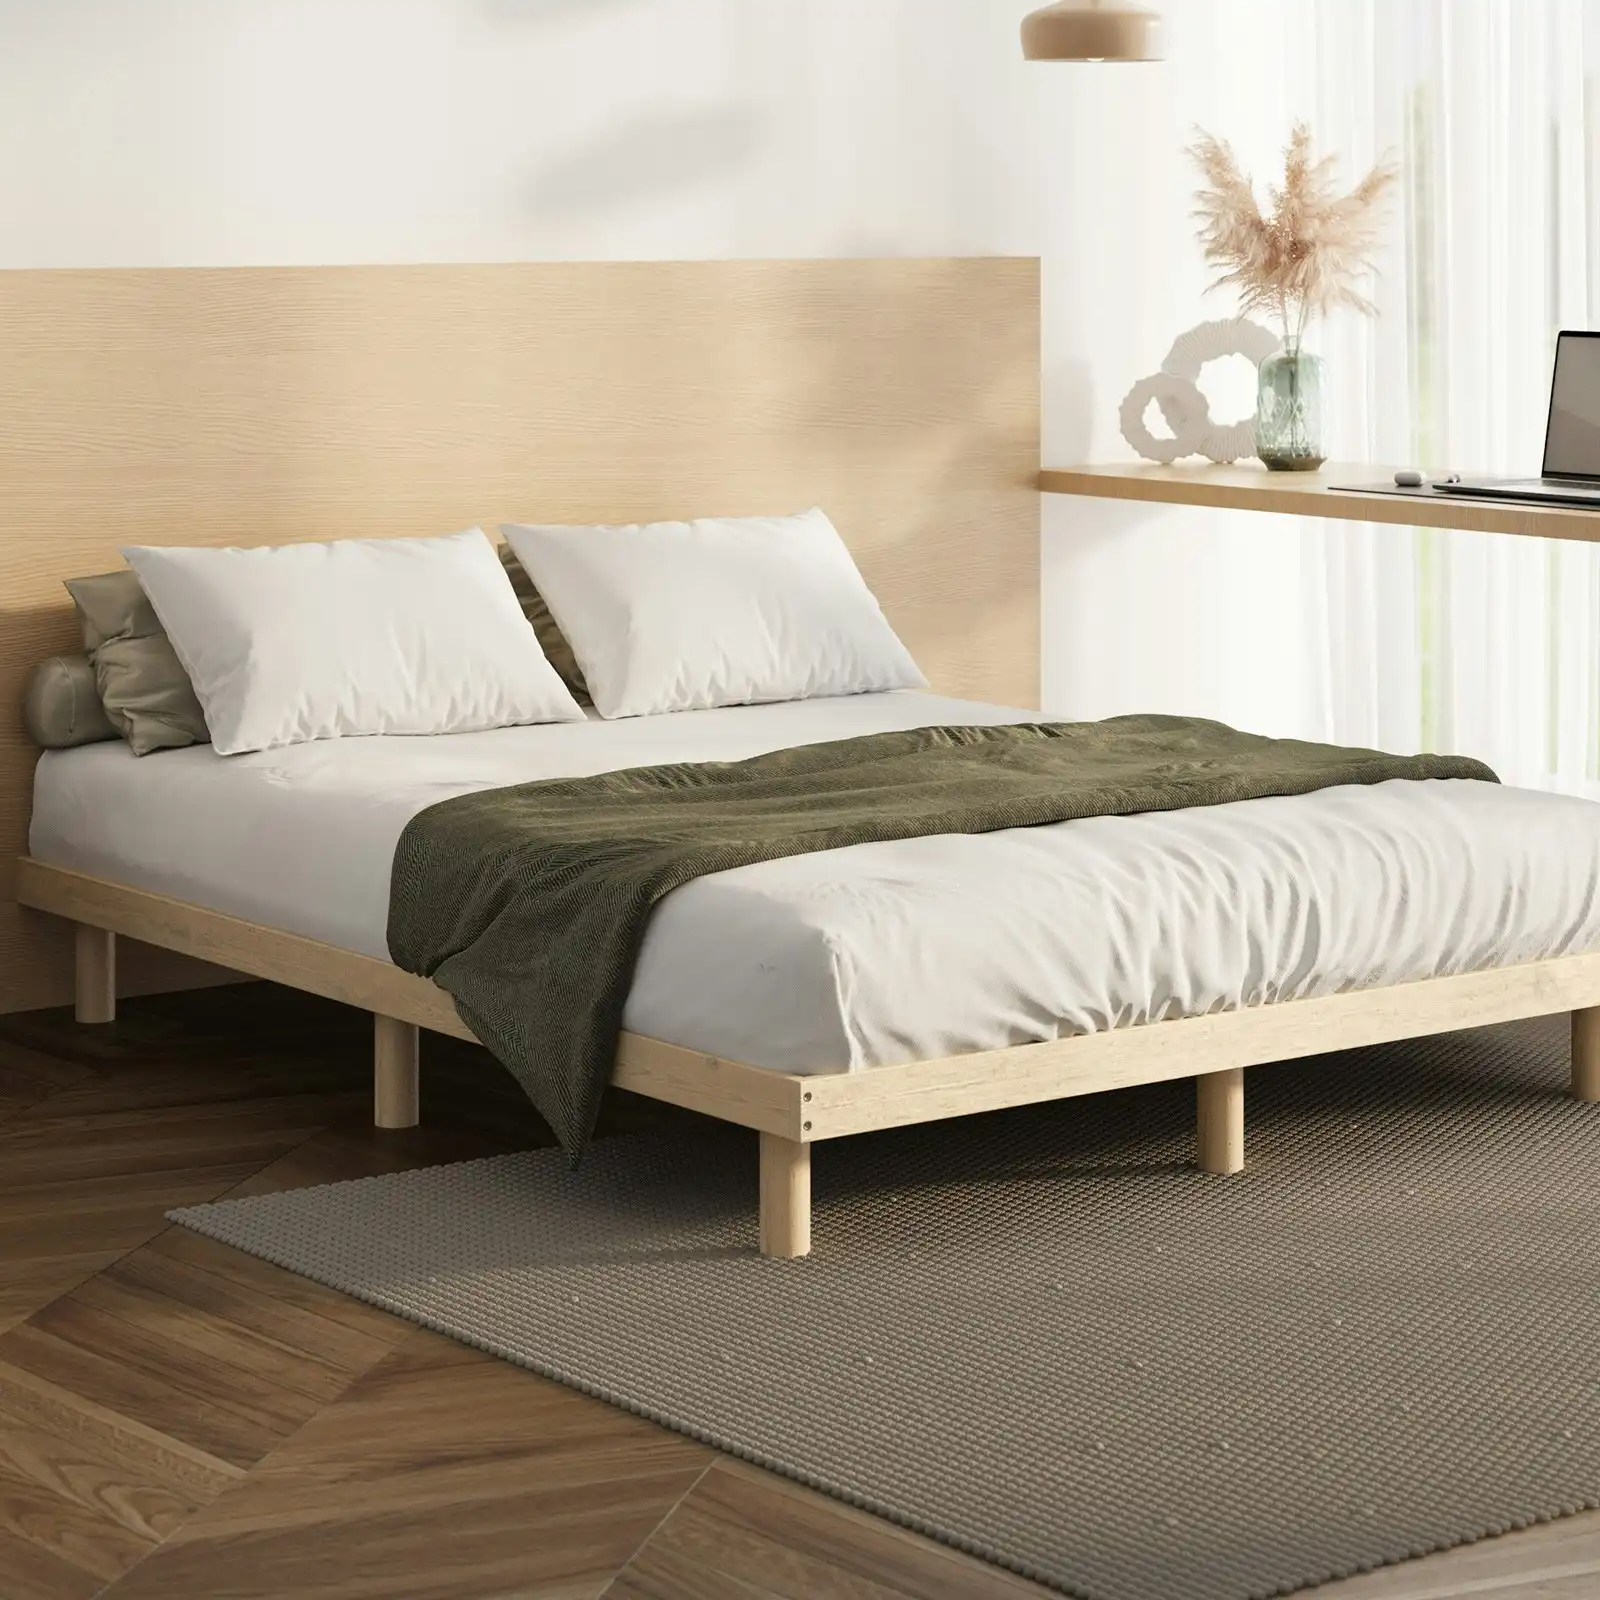 Oikiture Bed Frame King Single Wooden Base Bed Platform